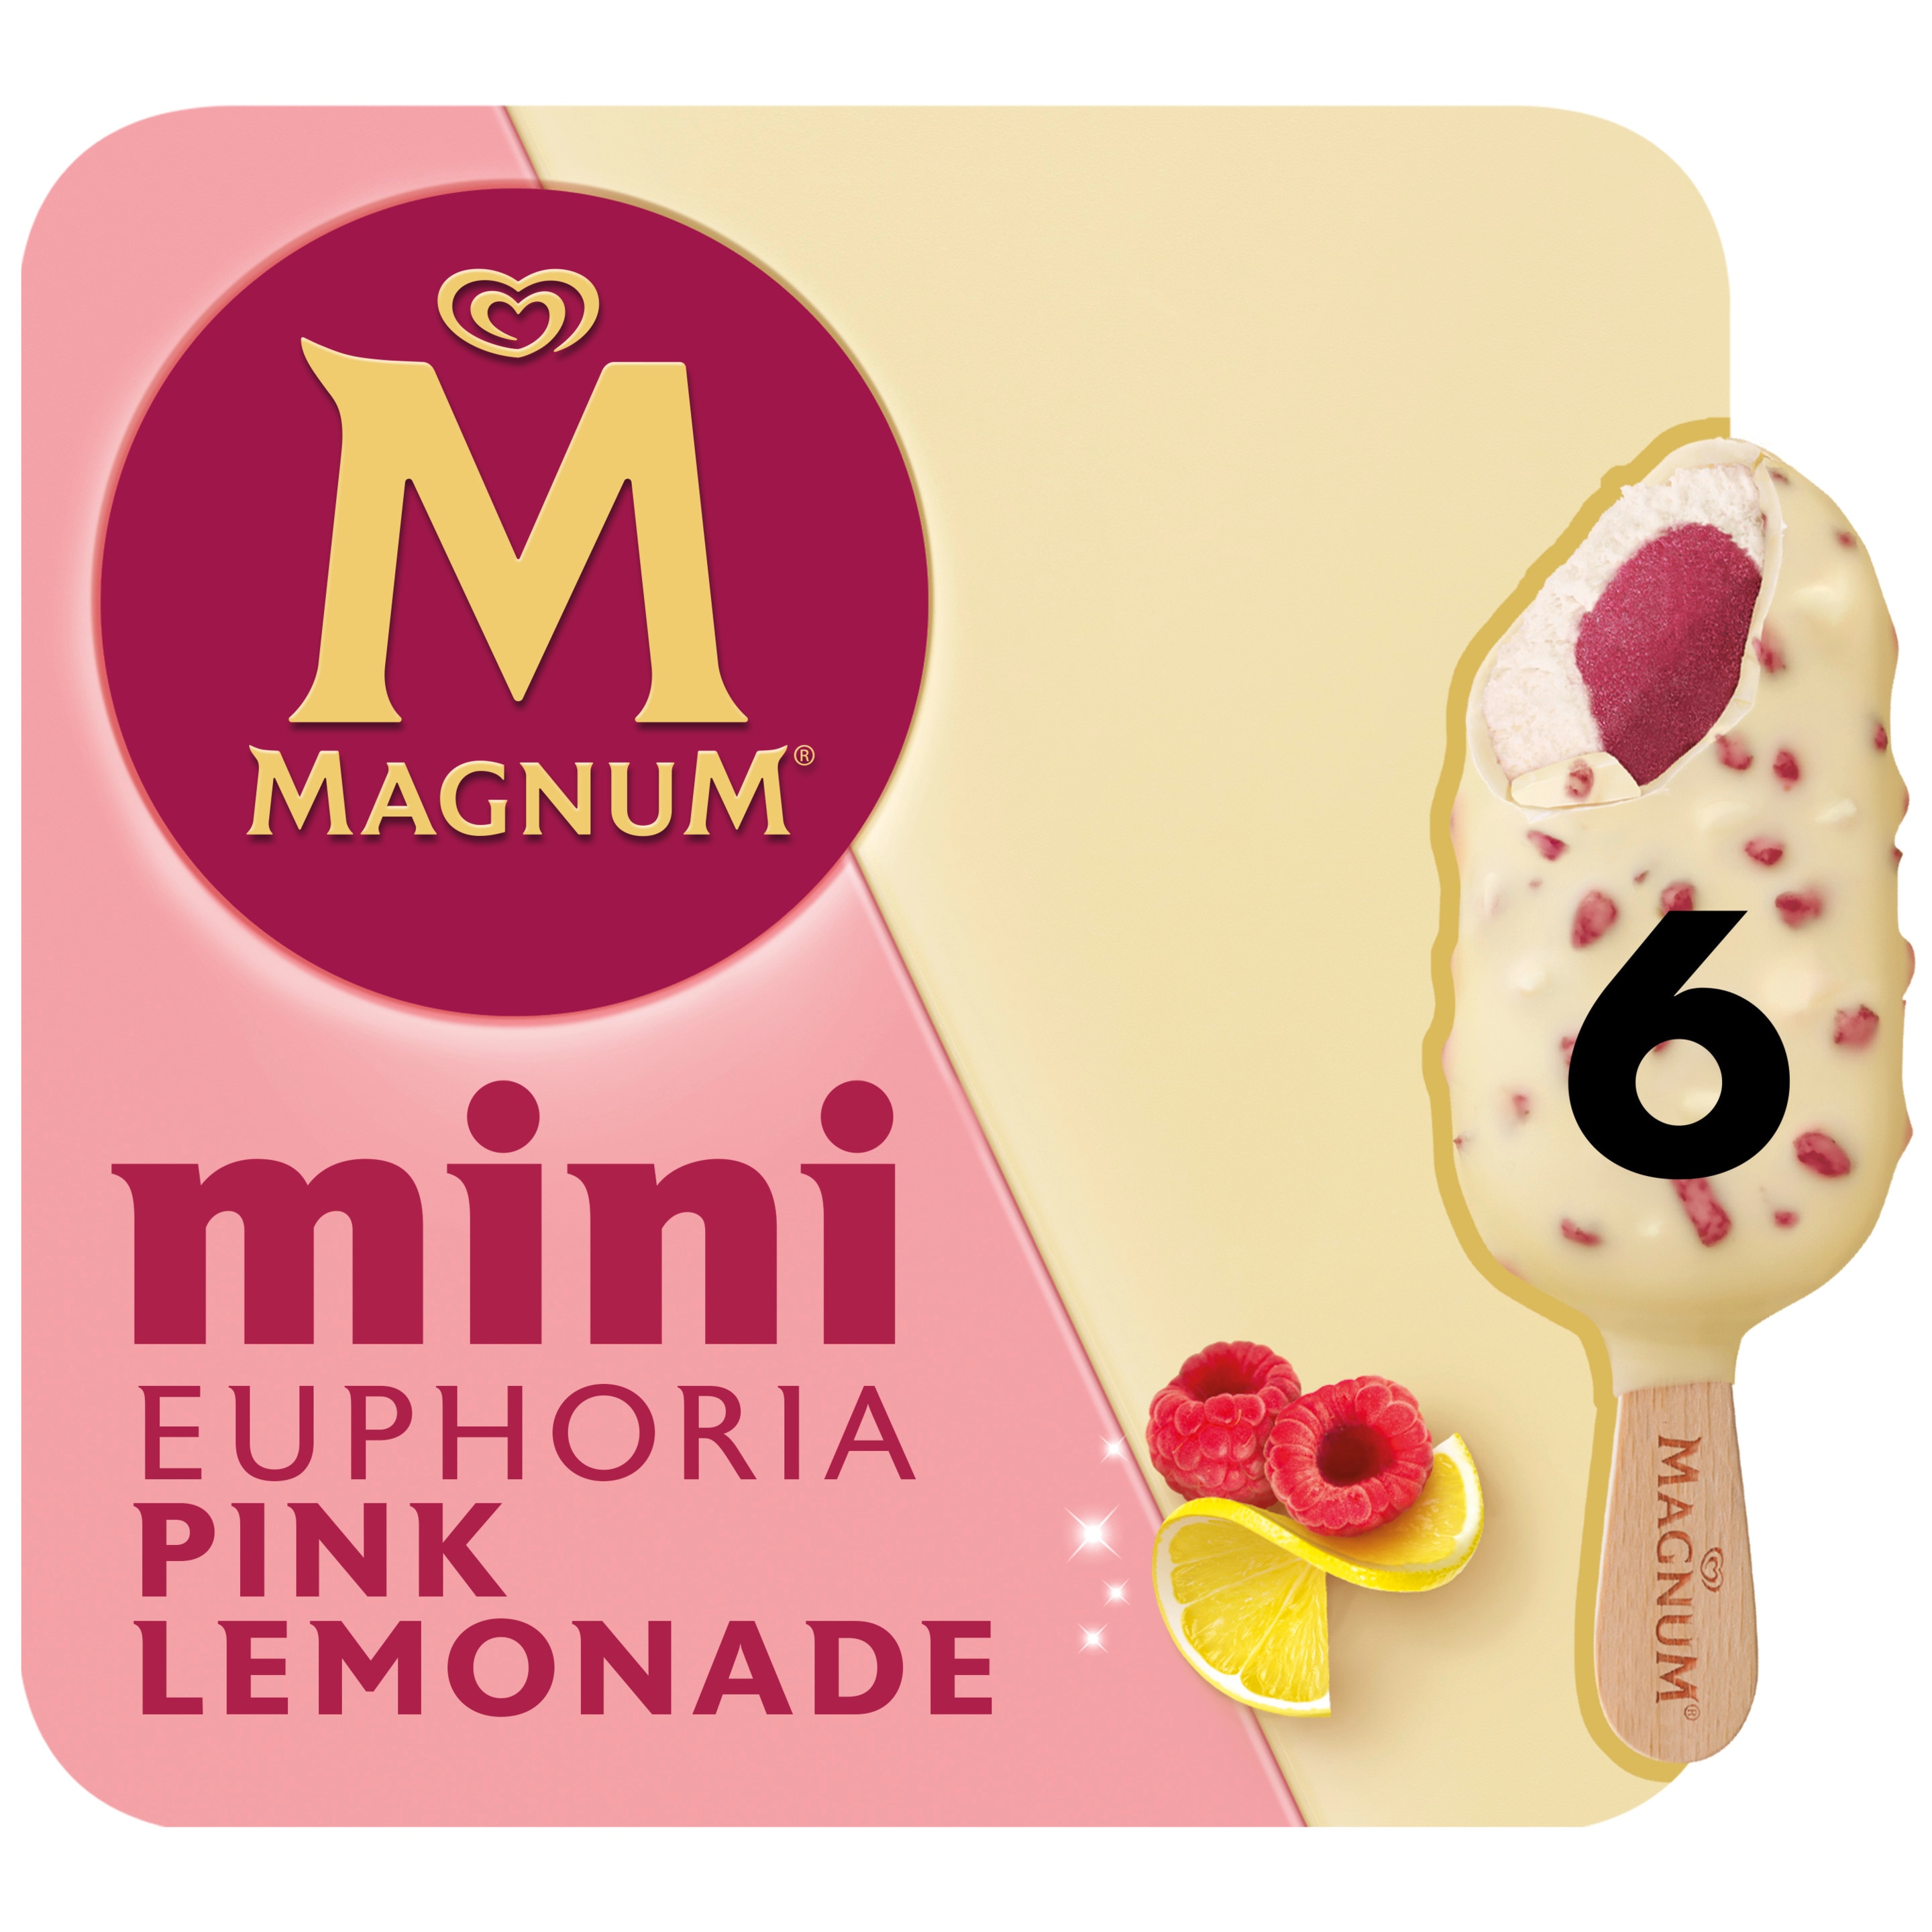 Magnum Mini Euphoria Pink Lemonade 6 x 55 ml